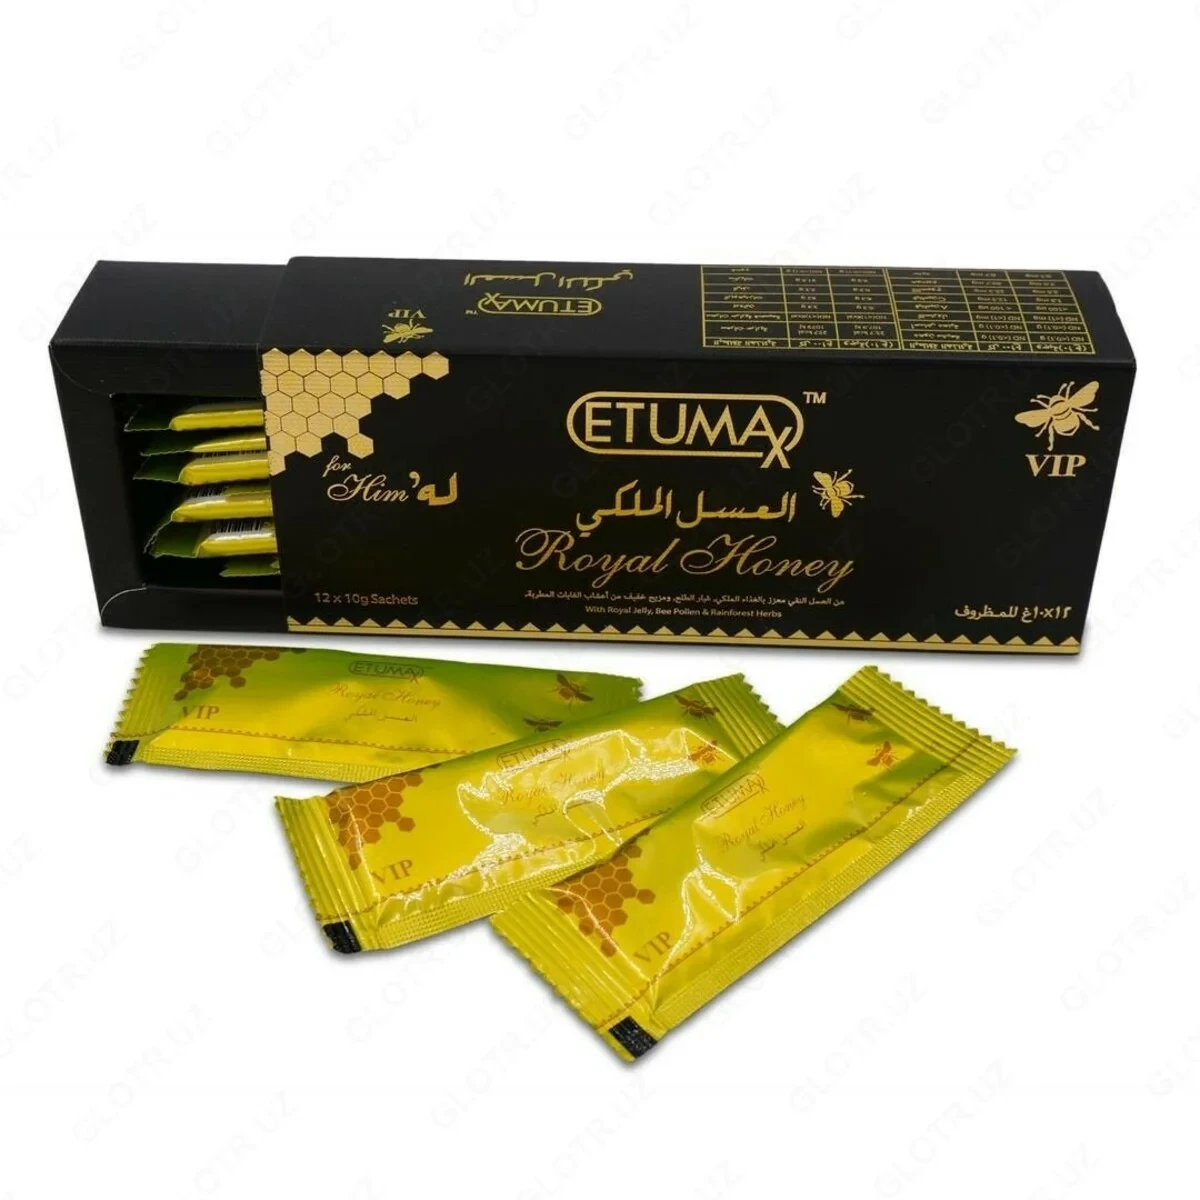 Королевский мед для мощной эрекции Royal Honey VIP Etumax усиленный (12x10 г, Малайзия)